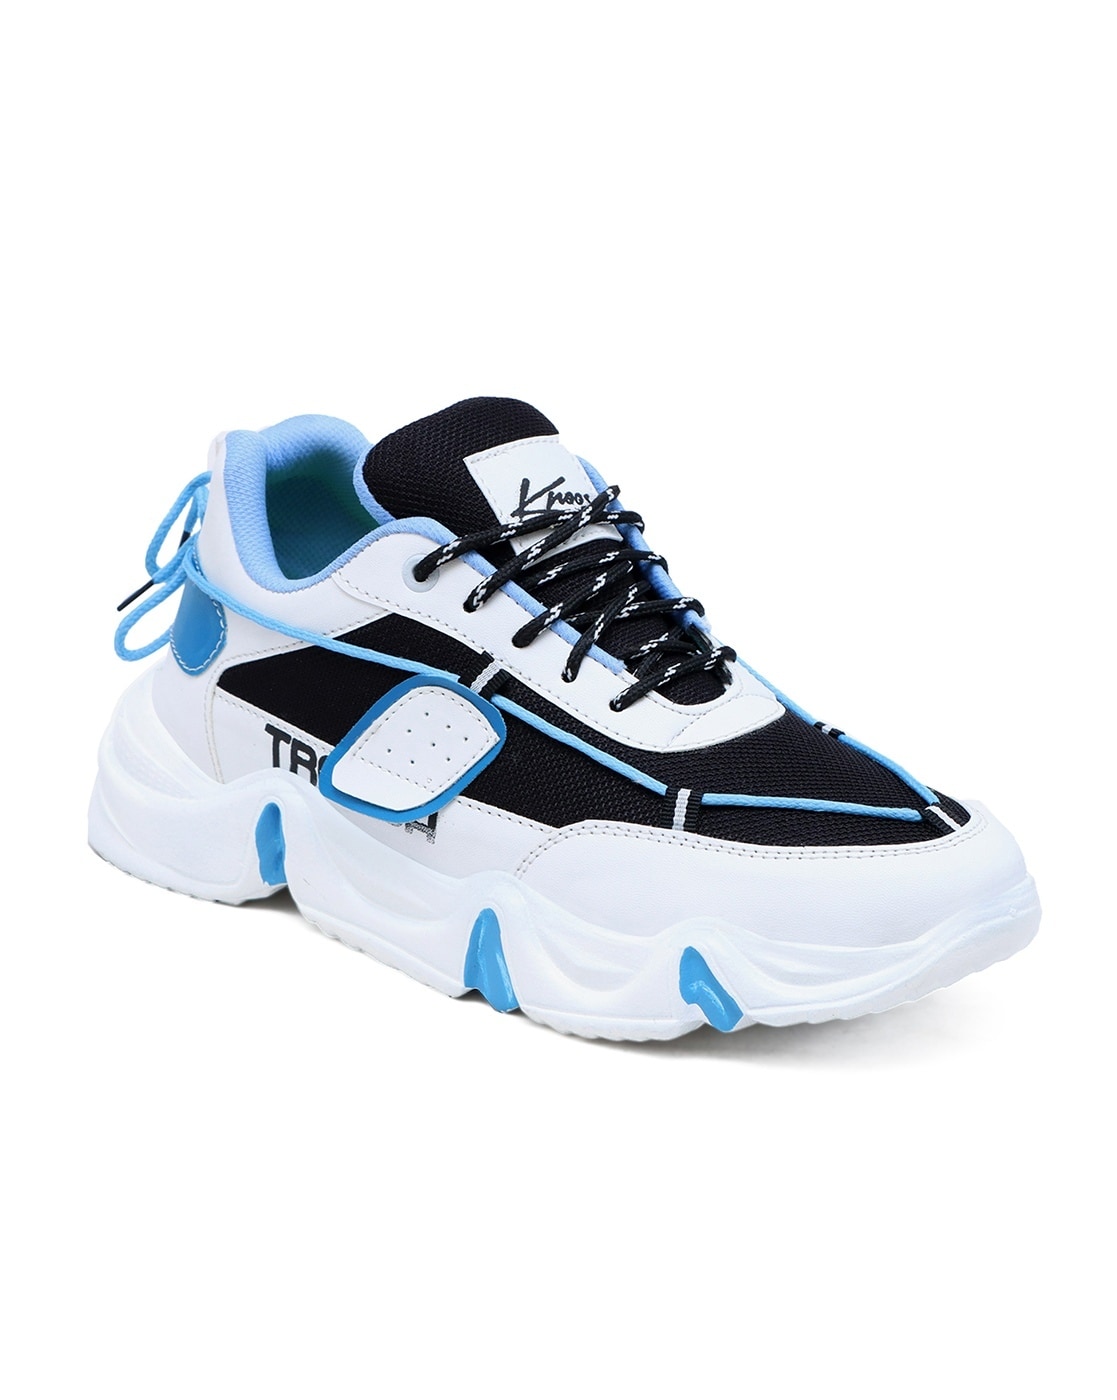 Buy Blue Sneakers for Men by BONKERZ Online | Ajio.com